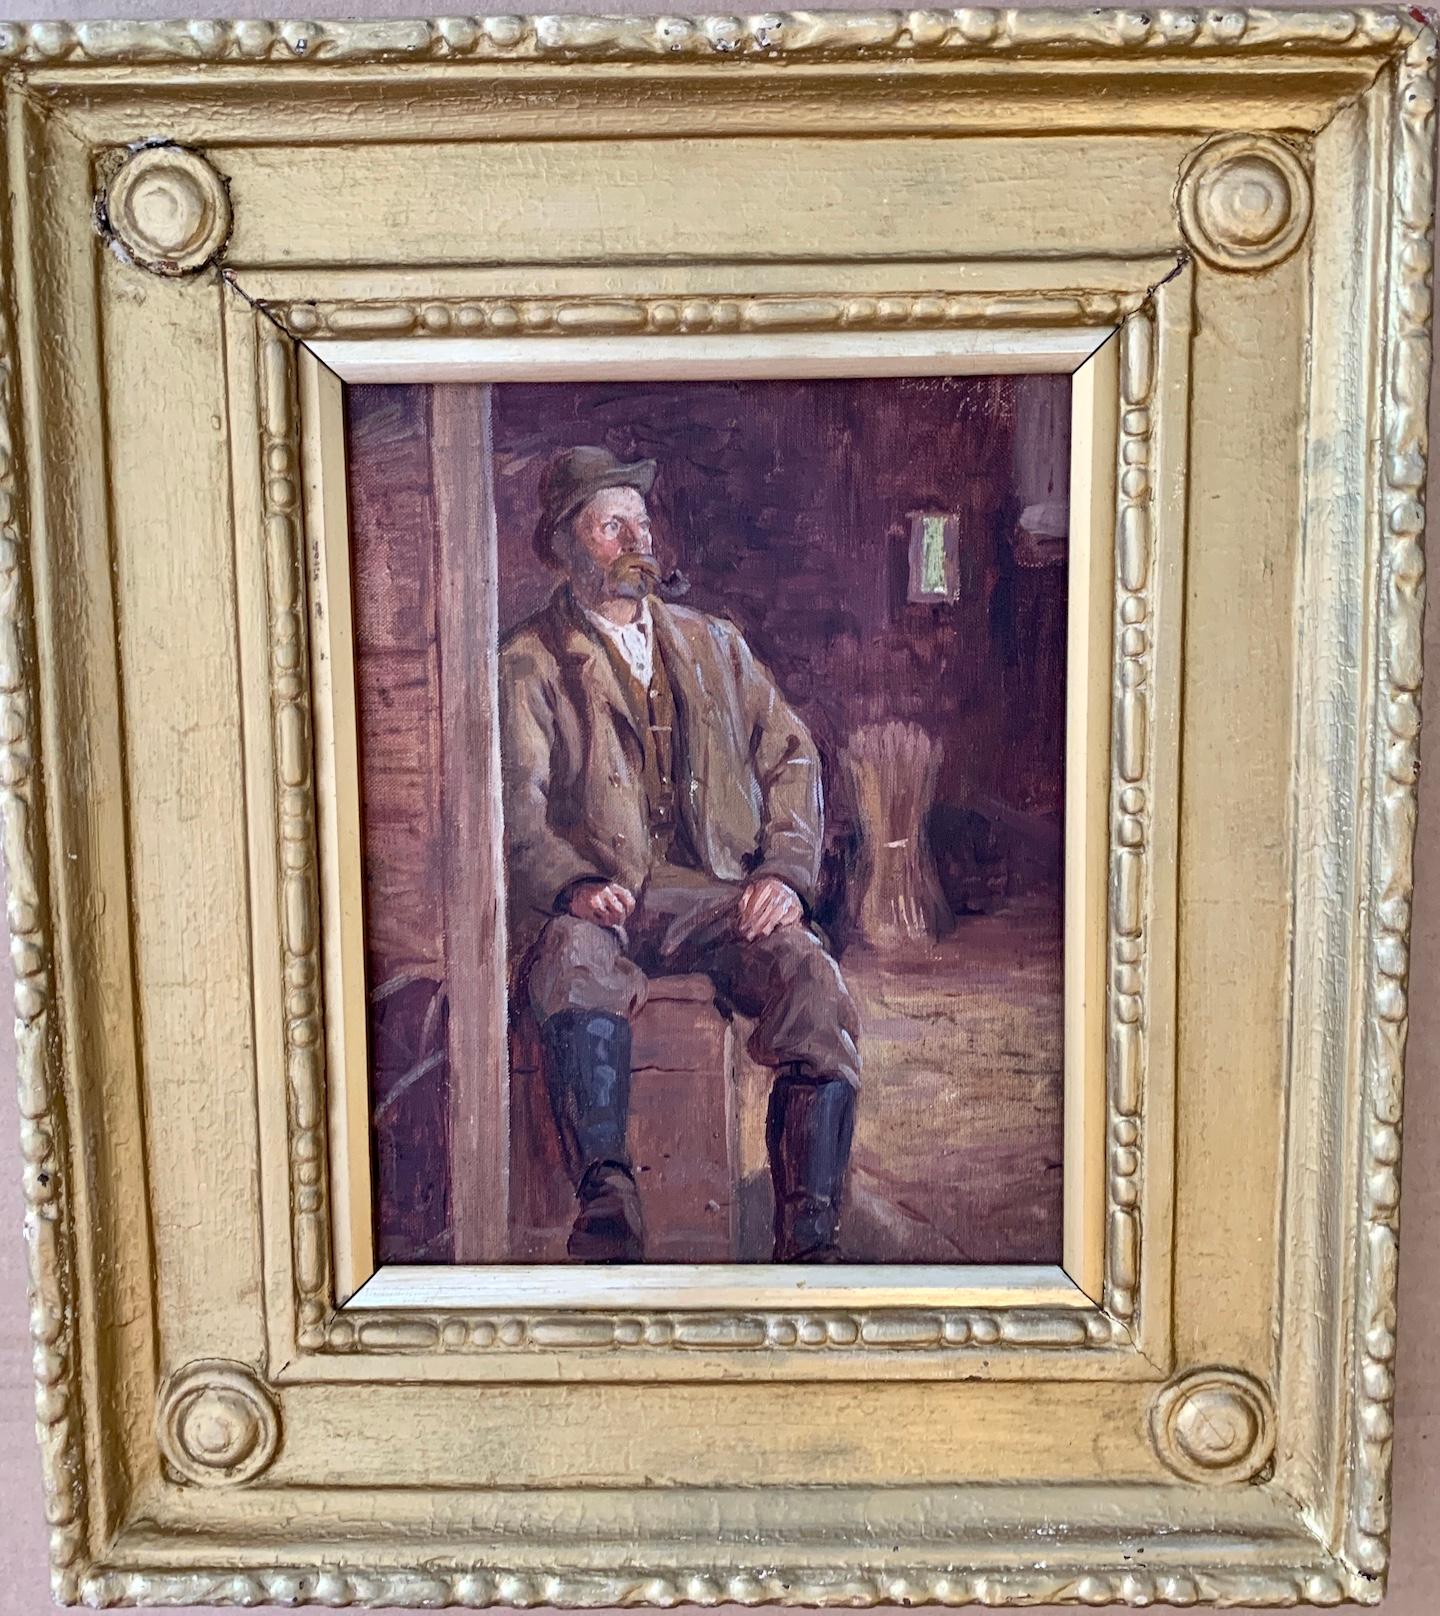 Irisches Porträt eines Mannes aus dem 19. Jahrhundert, der eine Pfeife raucht, in einer Scheune sitzt.